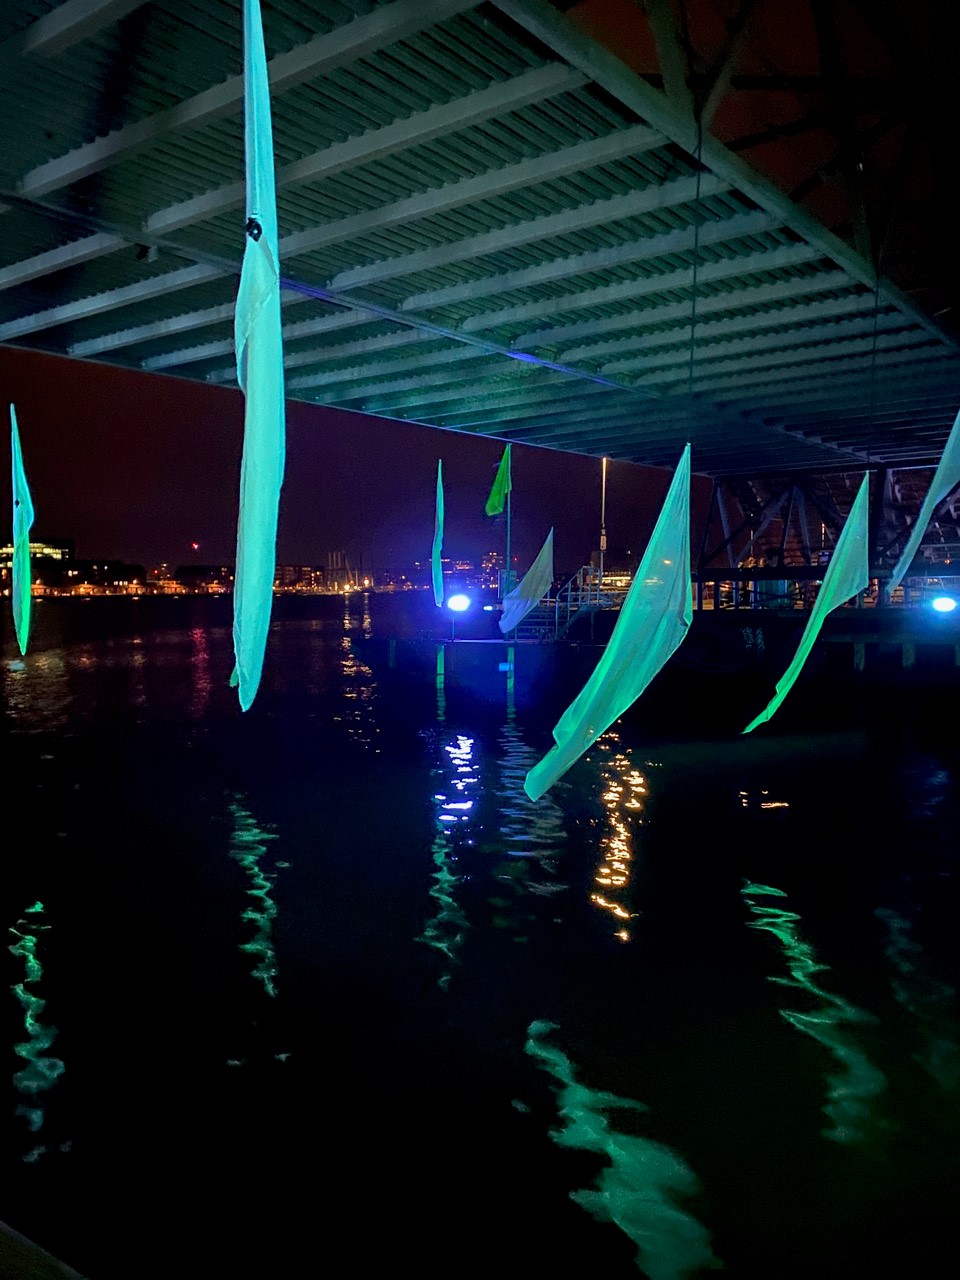 The Brixen Water Light Festival builds bridges between Copenhagen and Italy